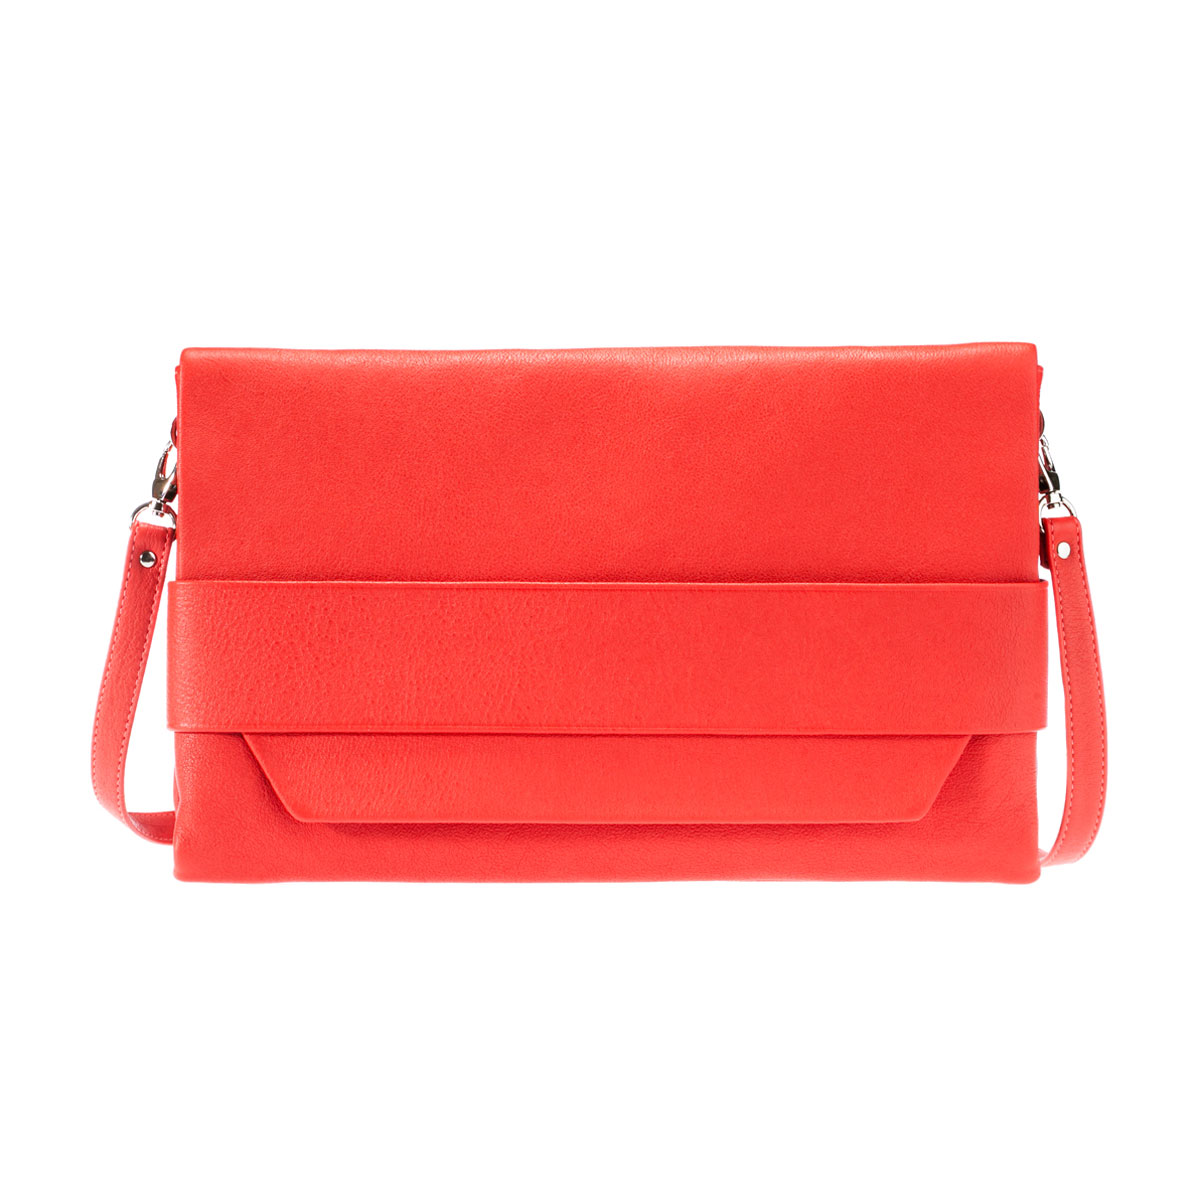 Сумка женская "Askent", цвет: красный. S.46.NL - купить фирменную сумку женскую по доступной цене с доставкой на дом в интернет магазине OZON.ru